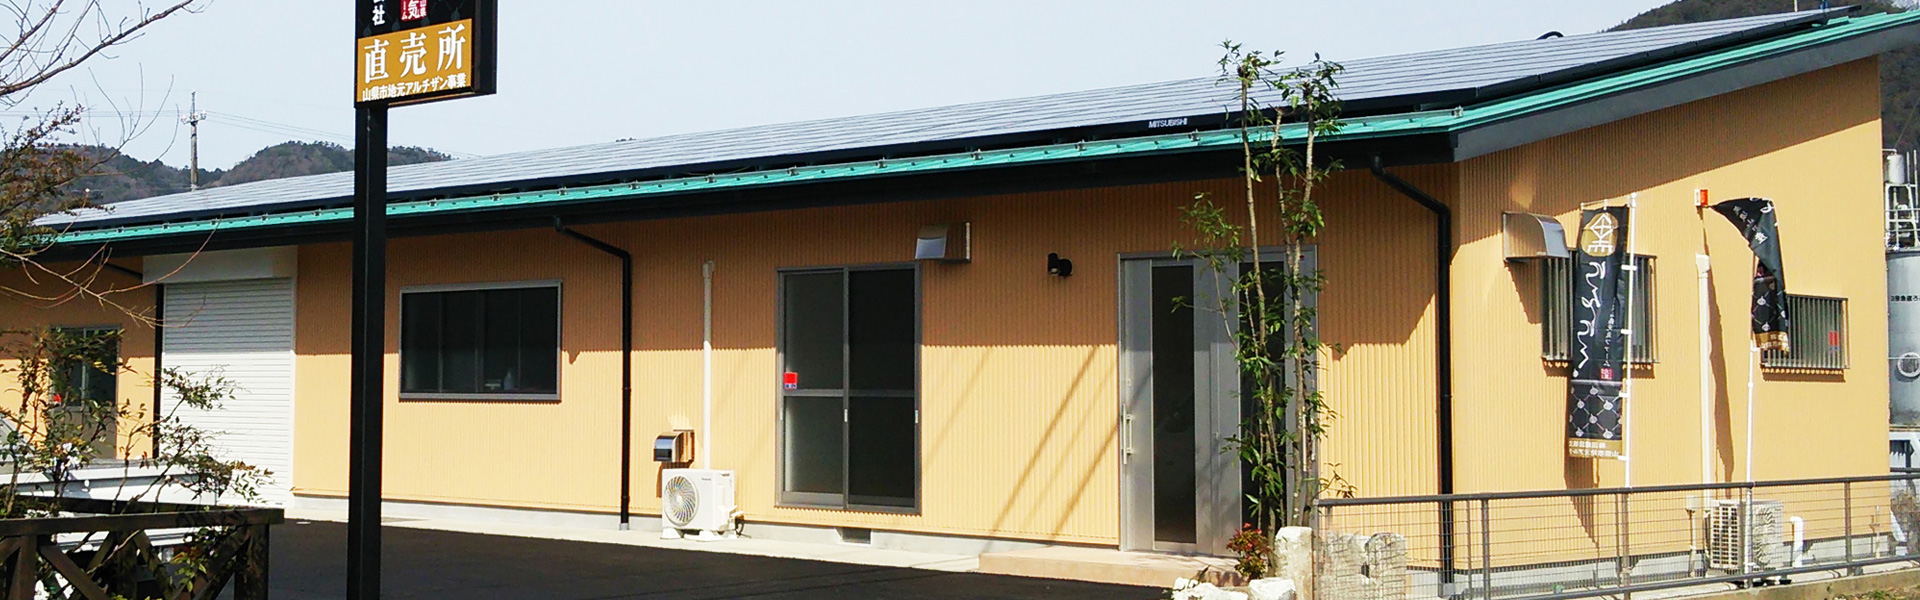 太陽光発電なら岐阜県下三菱電器仕入れ率トップのＳＥＣネット